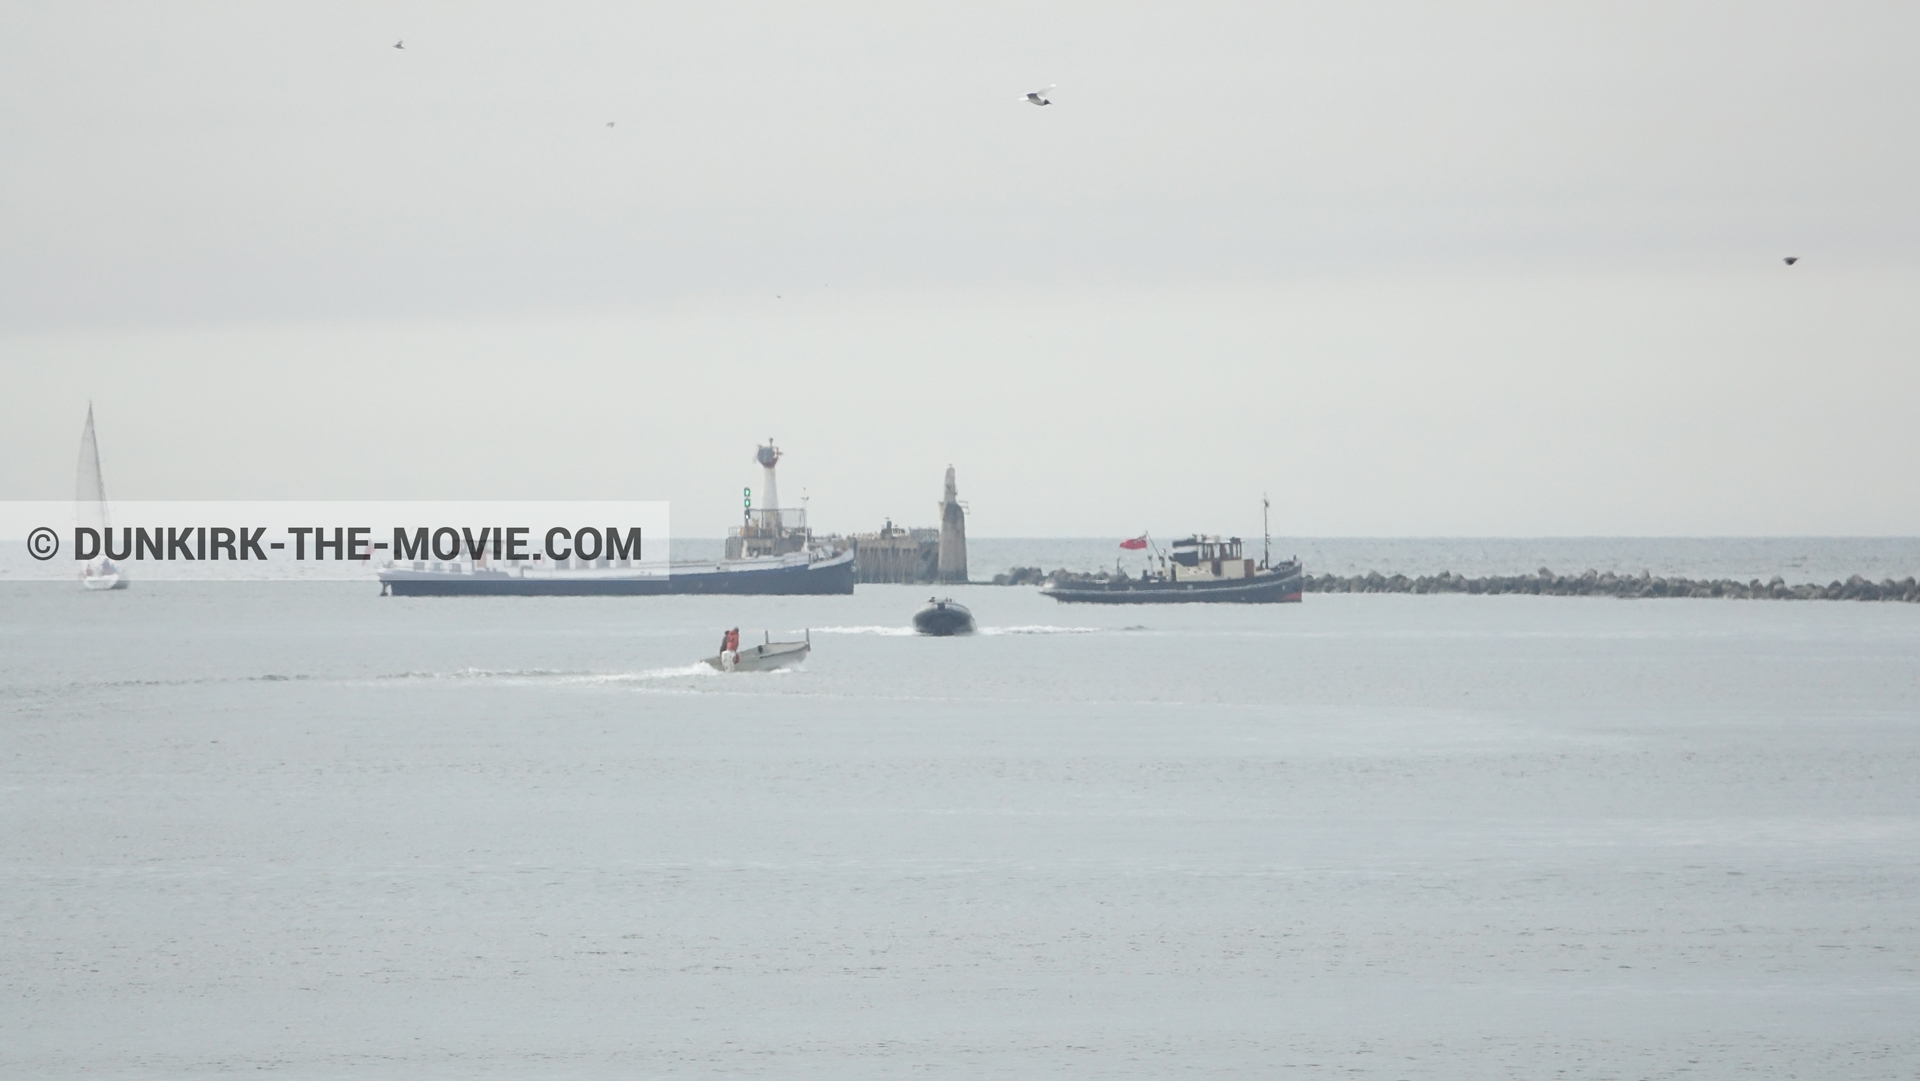 Photo avec bateau, ciel gris, mer calme, zodiac,  des dessous du Film Dunkerque de Nolan